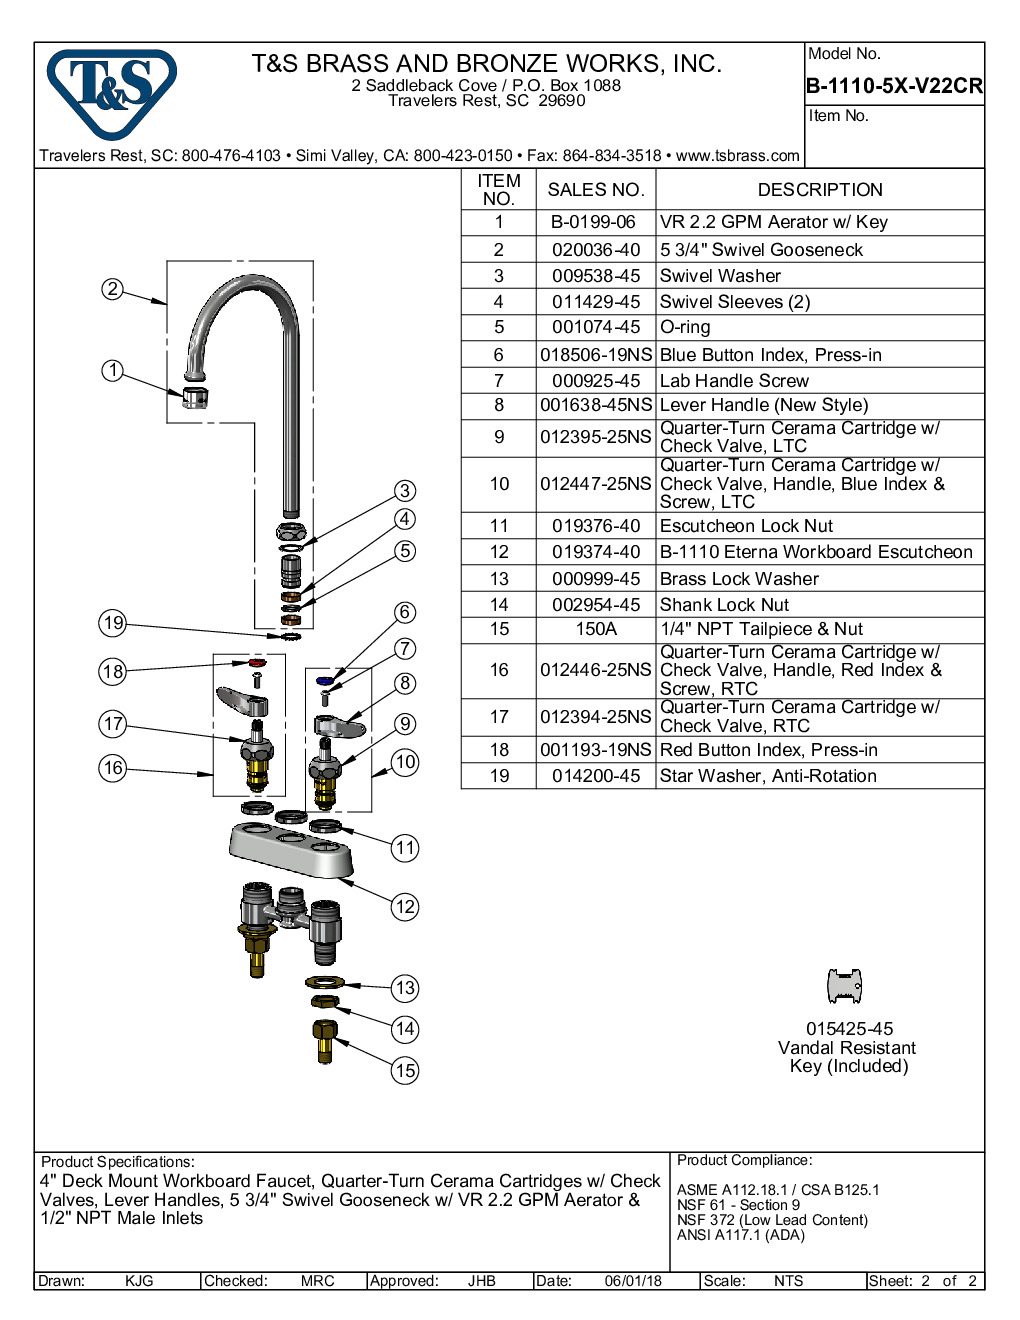 T&S Brass B-1110-5X-V22CR Deck Mount Faucet